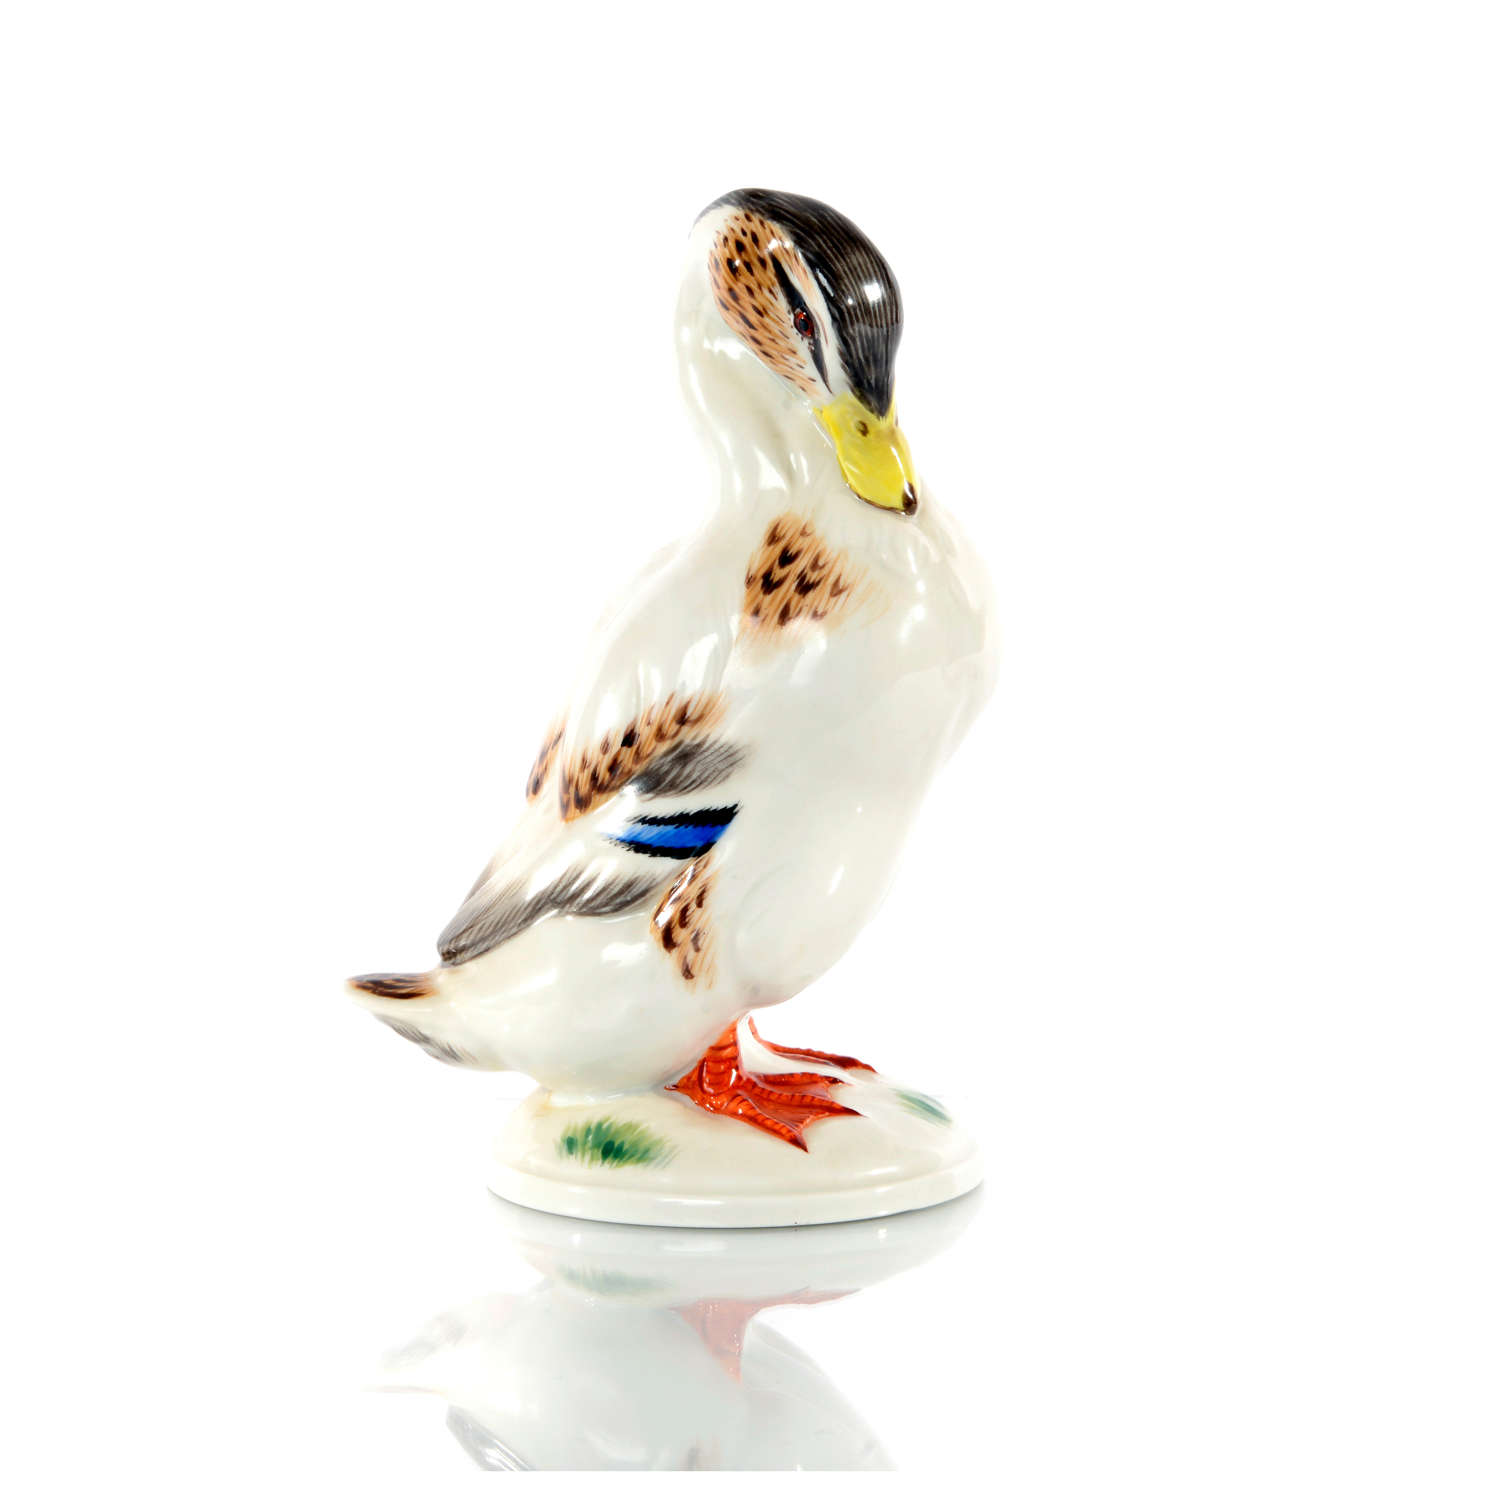 A Meissen figure of a Mallard duck